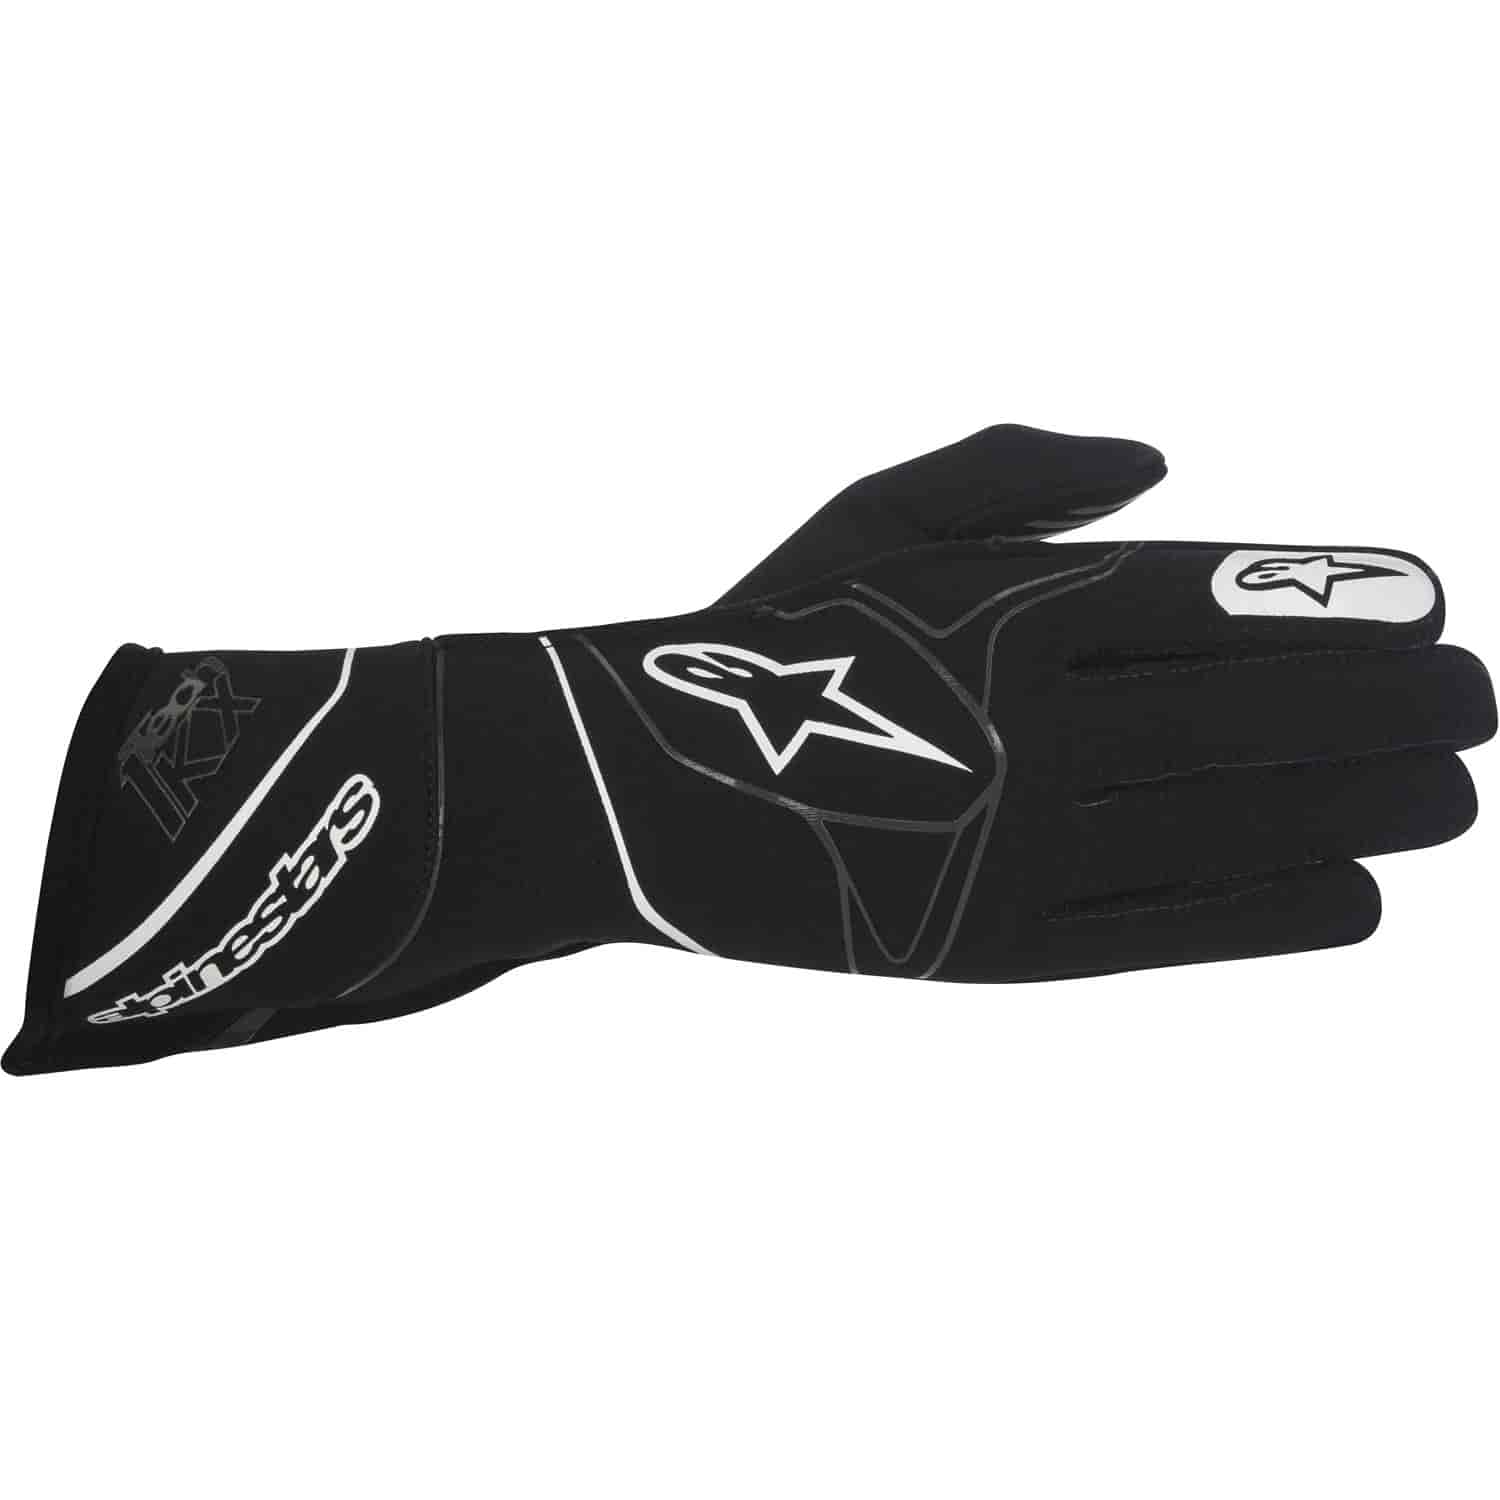 Tech 1-KX Gloves Black/White